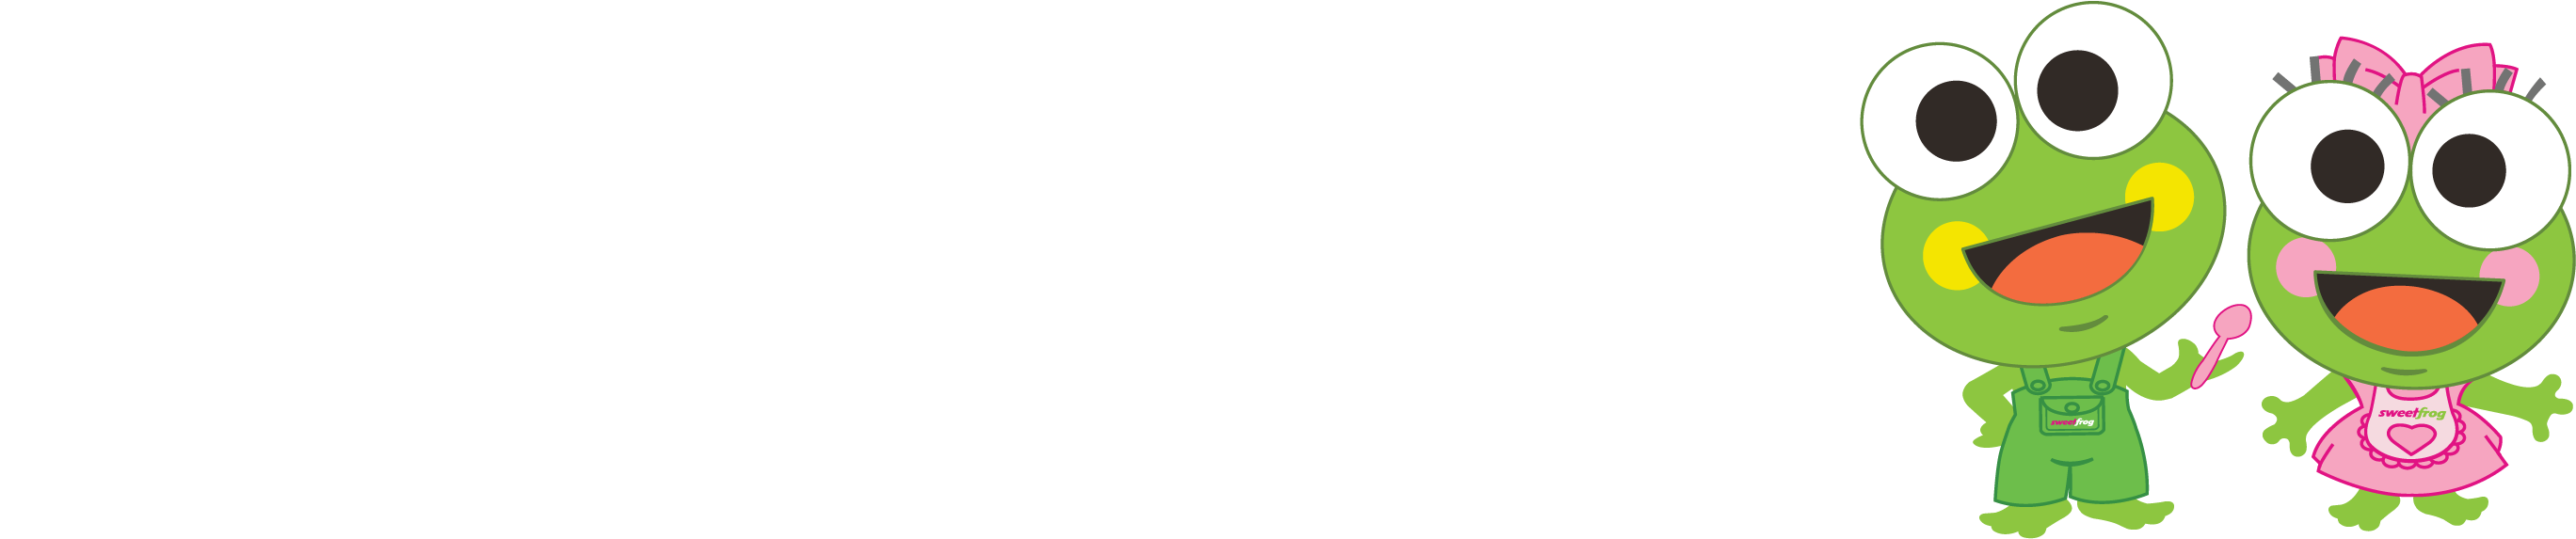 sweetFrog Franchise logo